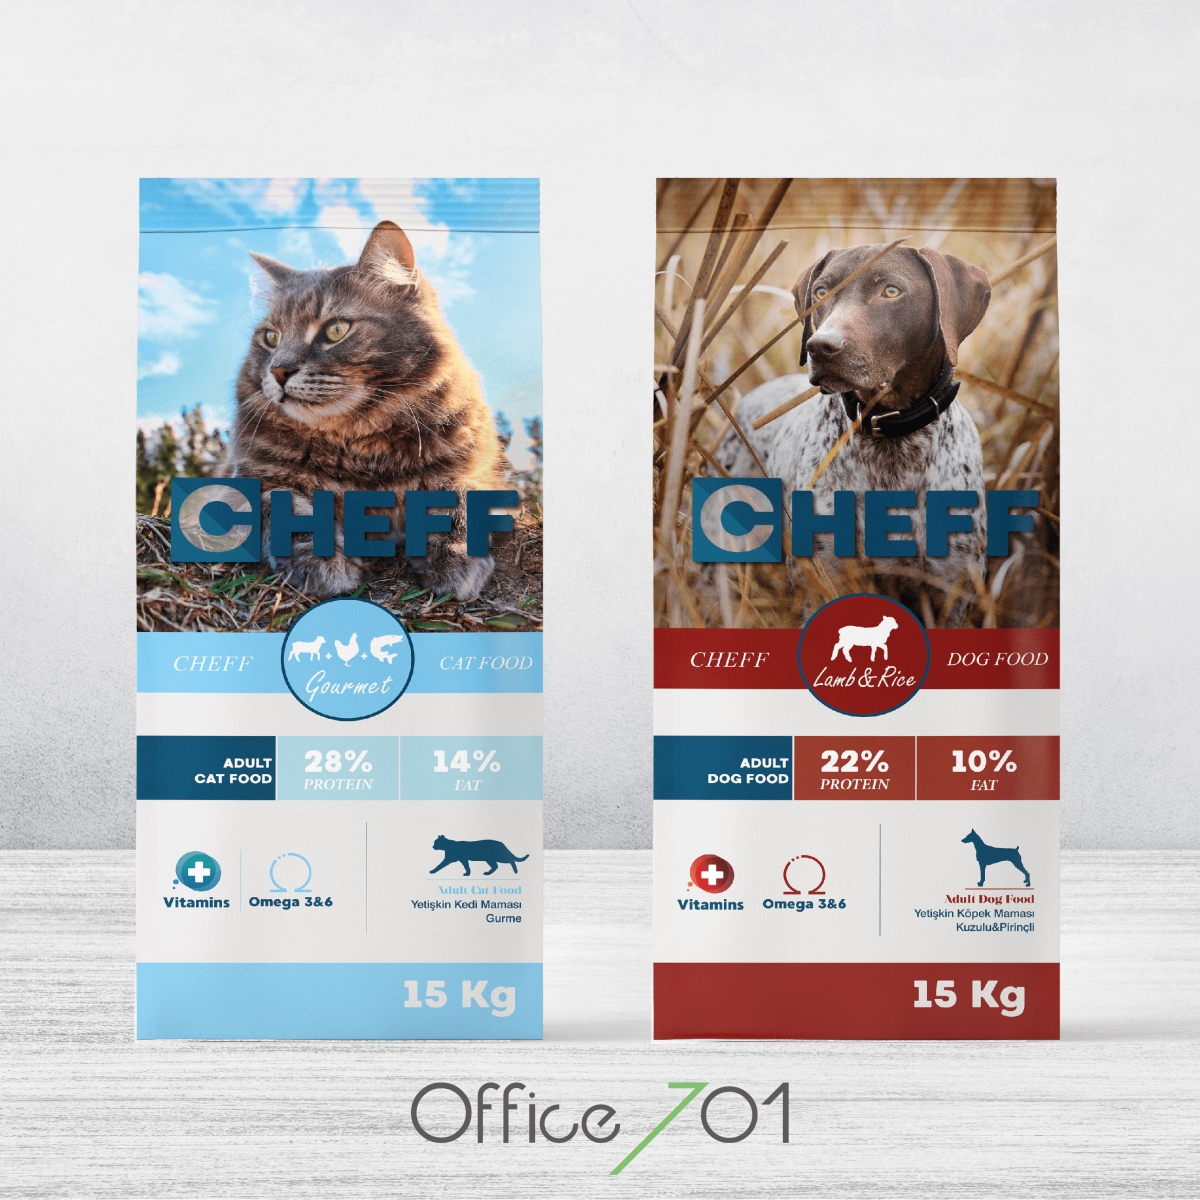 Office701 | Cheff Kedi Maması Ambalaj Tasarımı